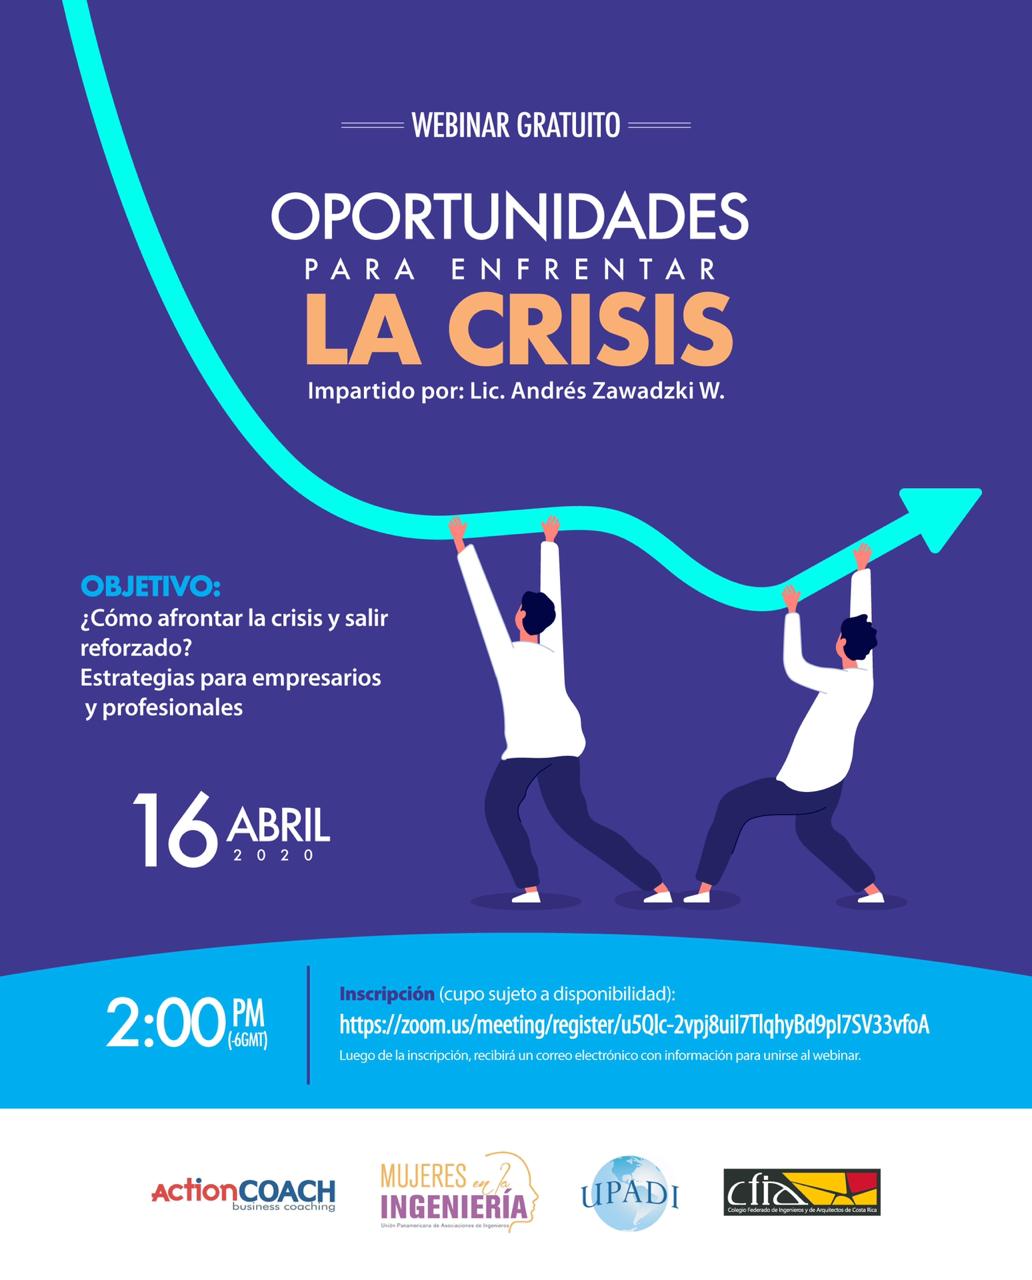 Webinar Gratuito: Oportunidades para enfrentar la crisis